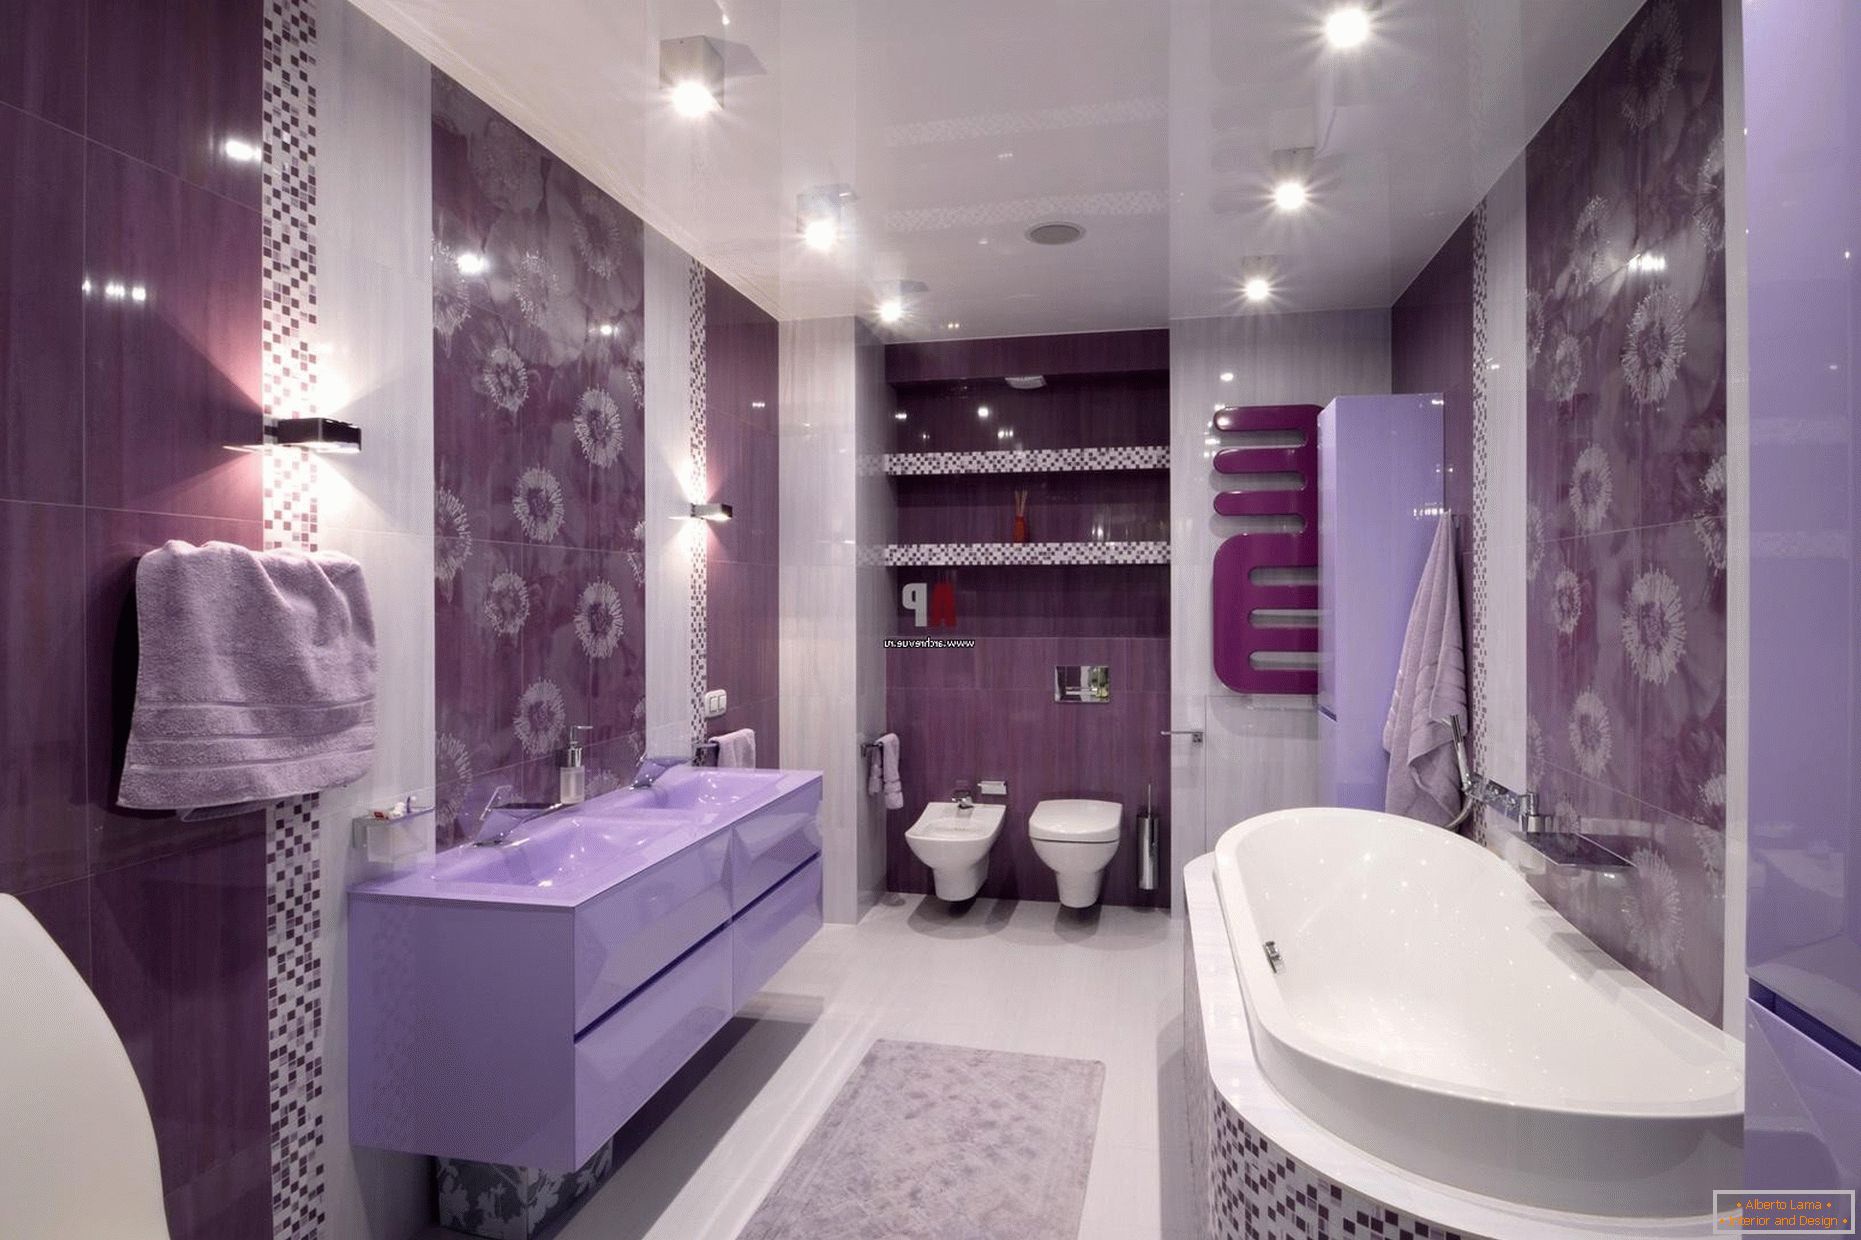 Design luxueux de la salle de bain en fleurs lilas